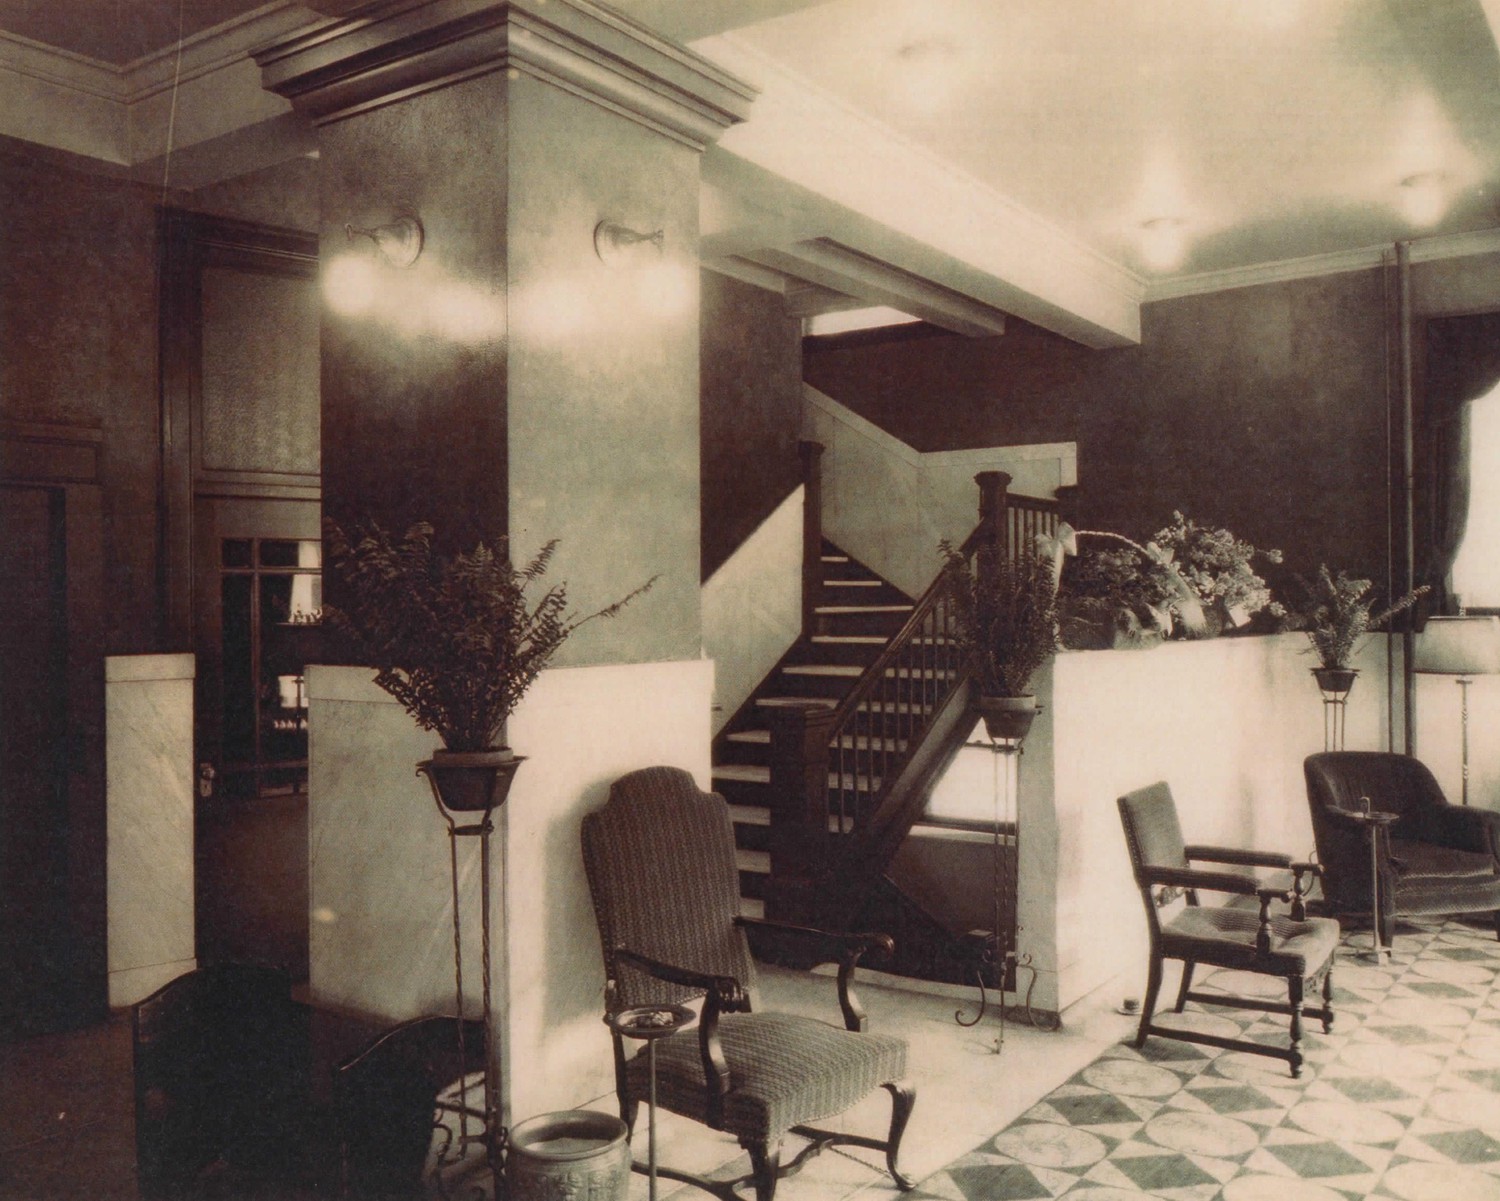 Hotel Rieger - Sanduskian, Sandusky Ohio Historic photo; hotel lobby looking northeast (1926)